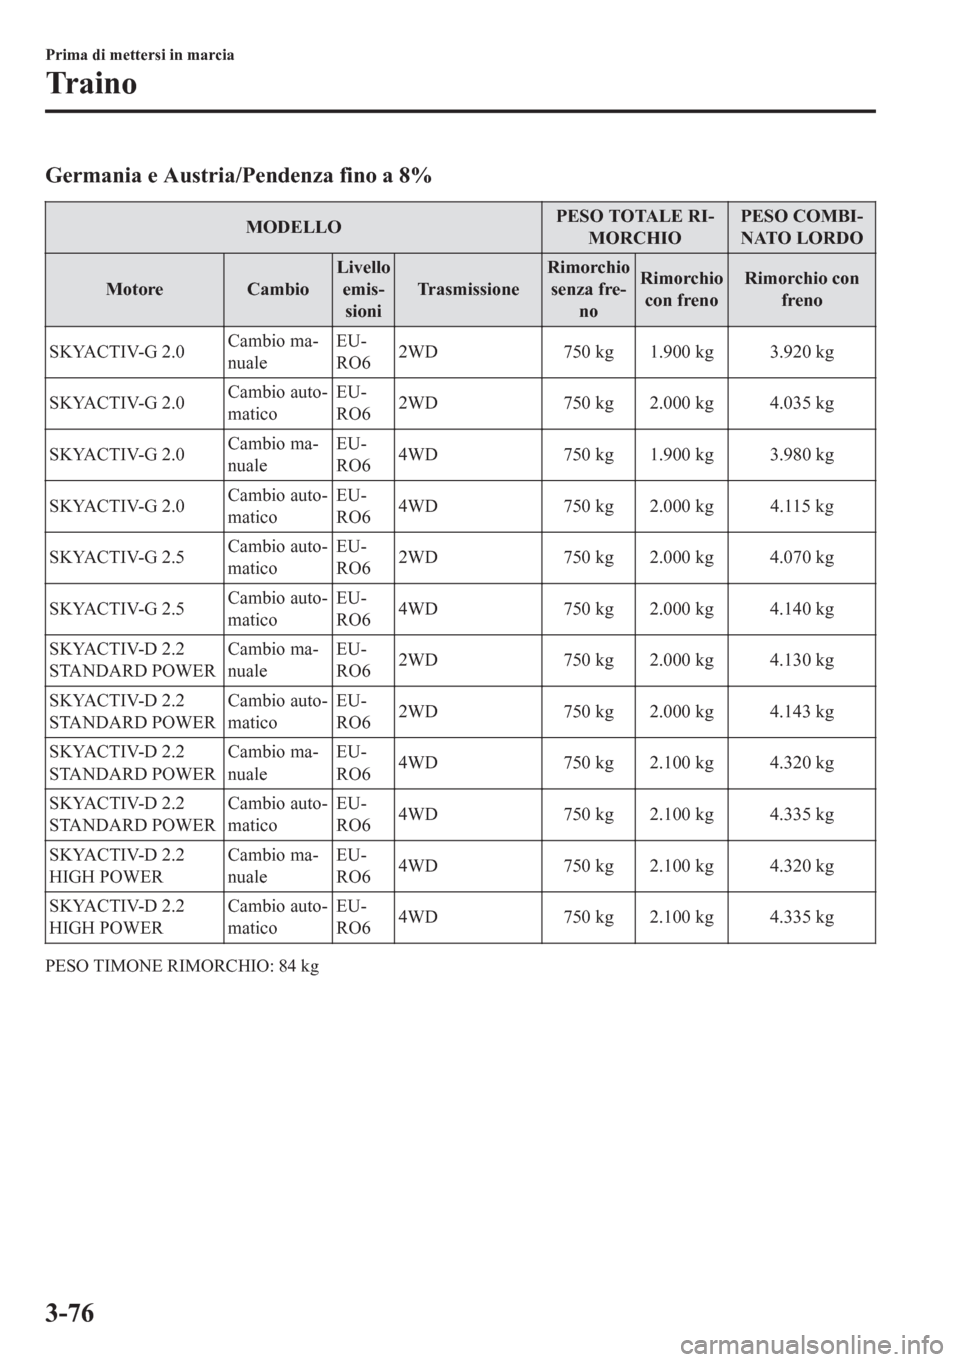 MAZDA MODEL CX-5 2018  Manuale del proprietario (in Italian) Germania e Austria/Pendenza fino a 8%
MODELLOPESO TOTALE RI-
MORCHIOPESO COMBI-
NATO LORDO
Motore CambioLivello
emis-
sioniTrasmissioneRimorchio
senza fre-
noRimorchio
con frenoRimorchio con
freno
SKY